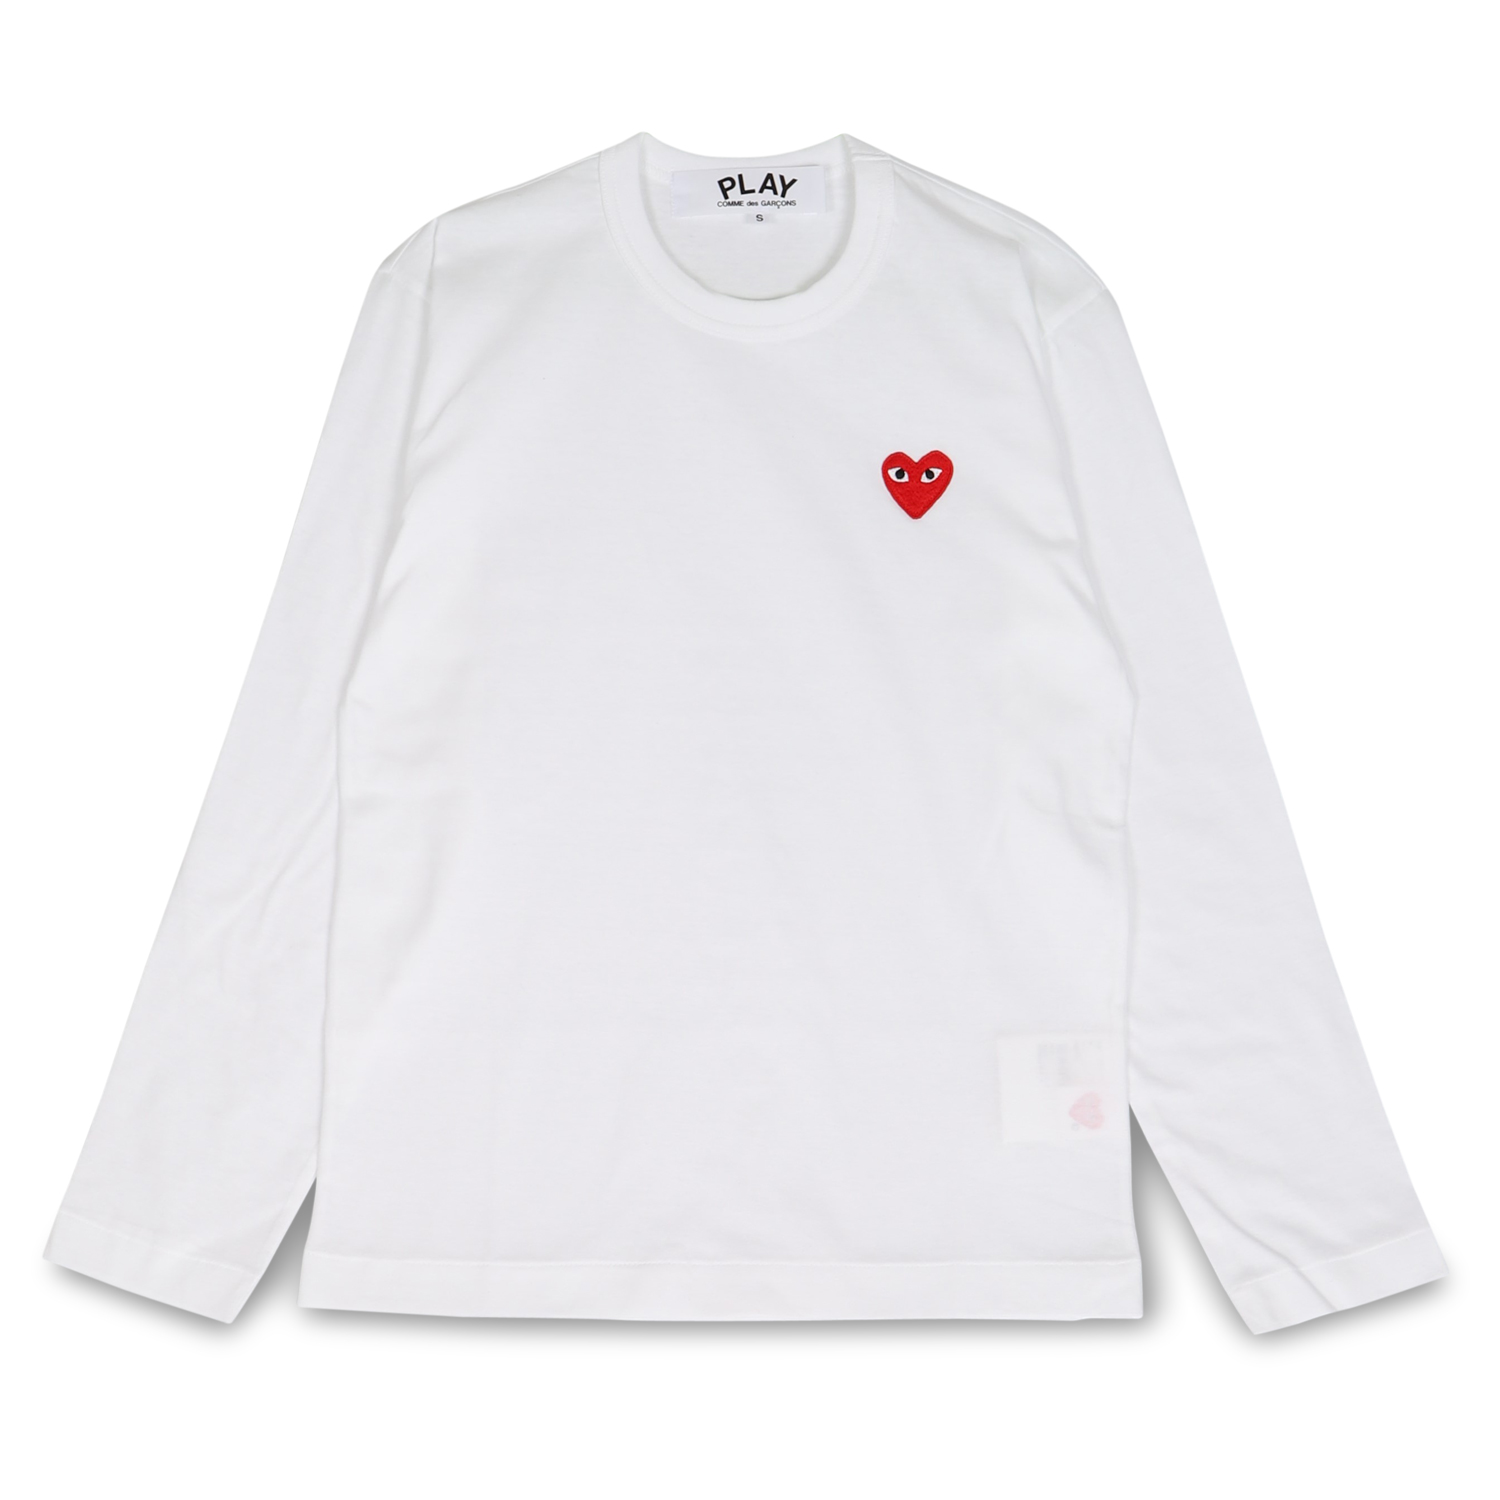 プレイ コムデギャルソン PLAY COMME des GARCONS Tシャツ 長袖 メンズ ロンT レッドハート ロゴ RED HEART  PLAY T-SHIRT ブラック ホワイト 黒 白 T118